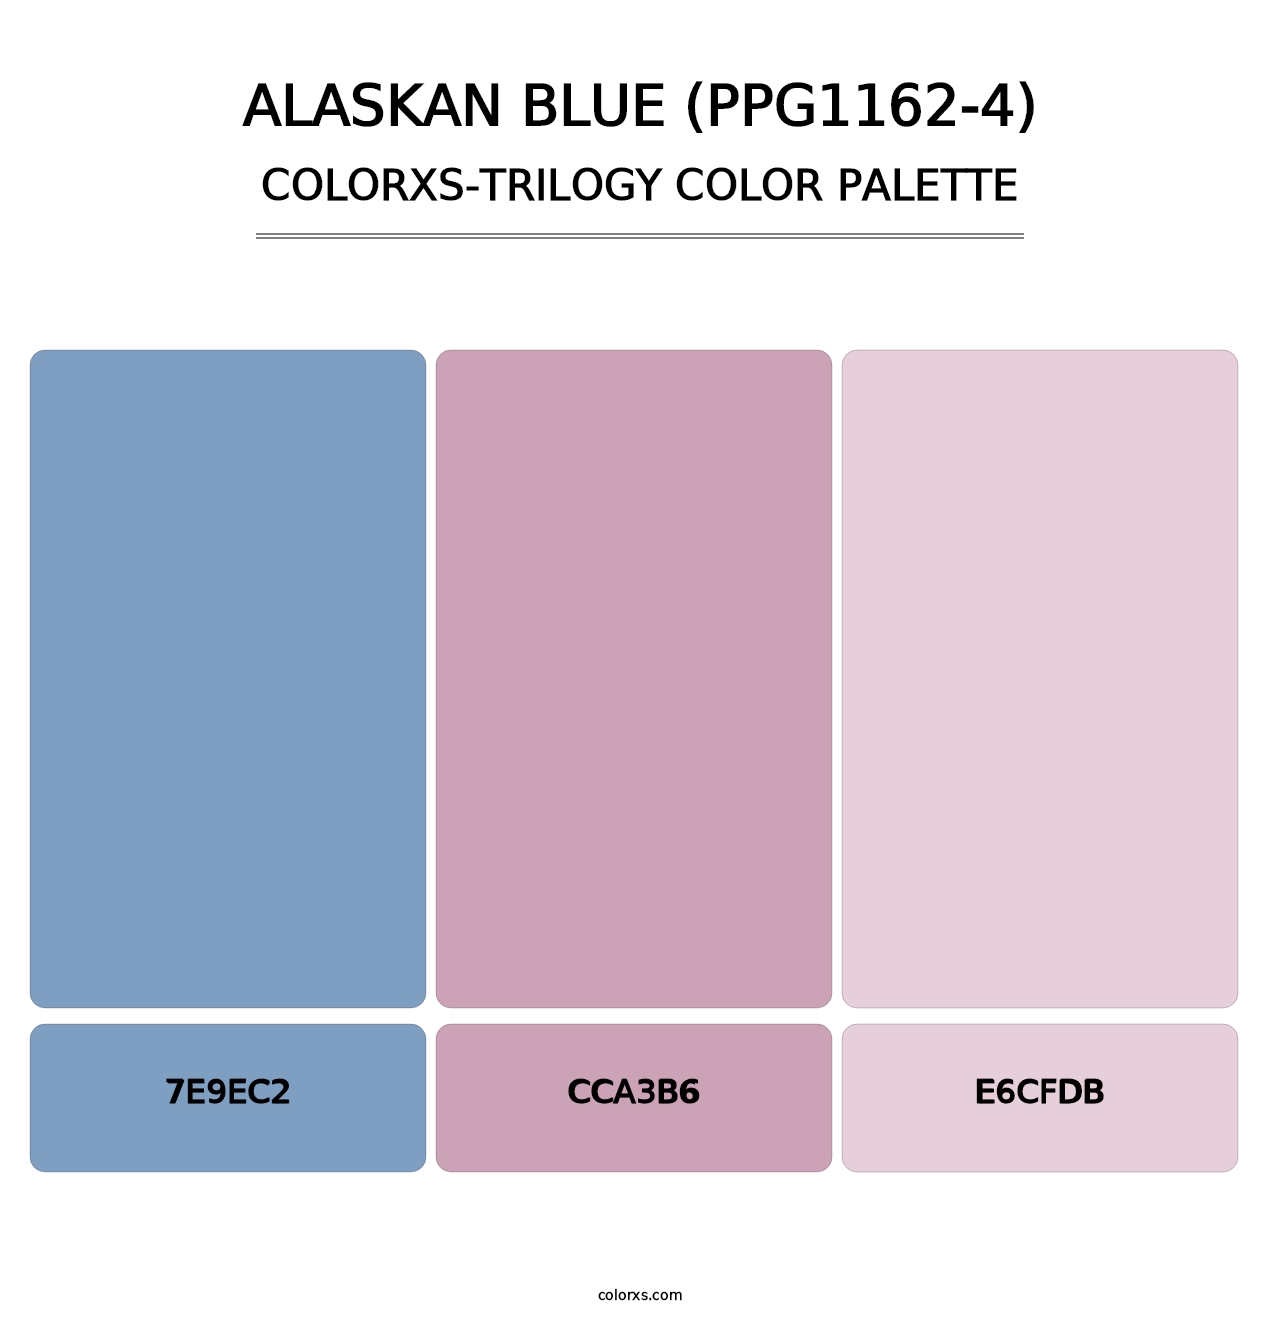 Alaskan Blue (PPG1162-4) - Colorxs Trilogy Palette